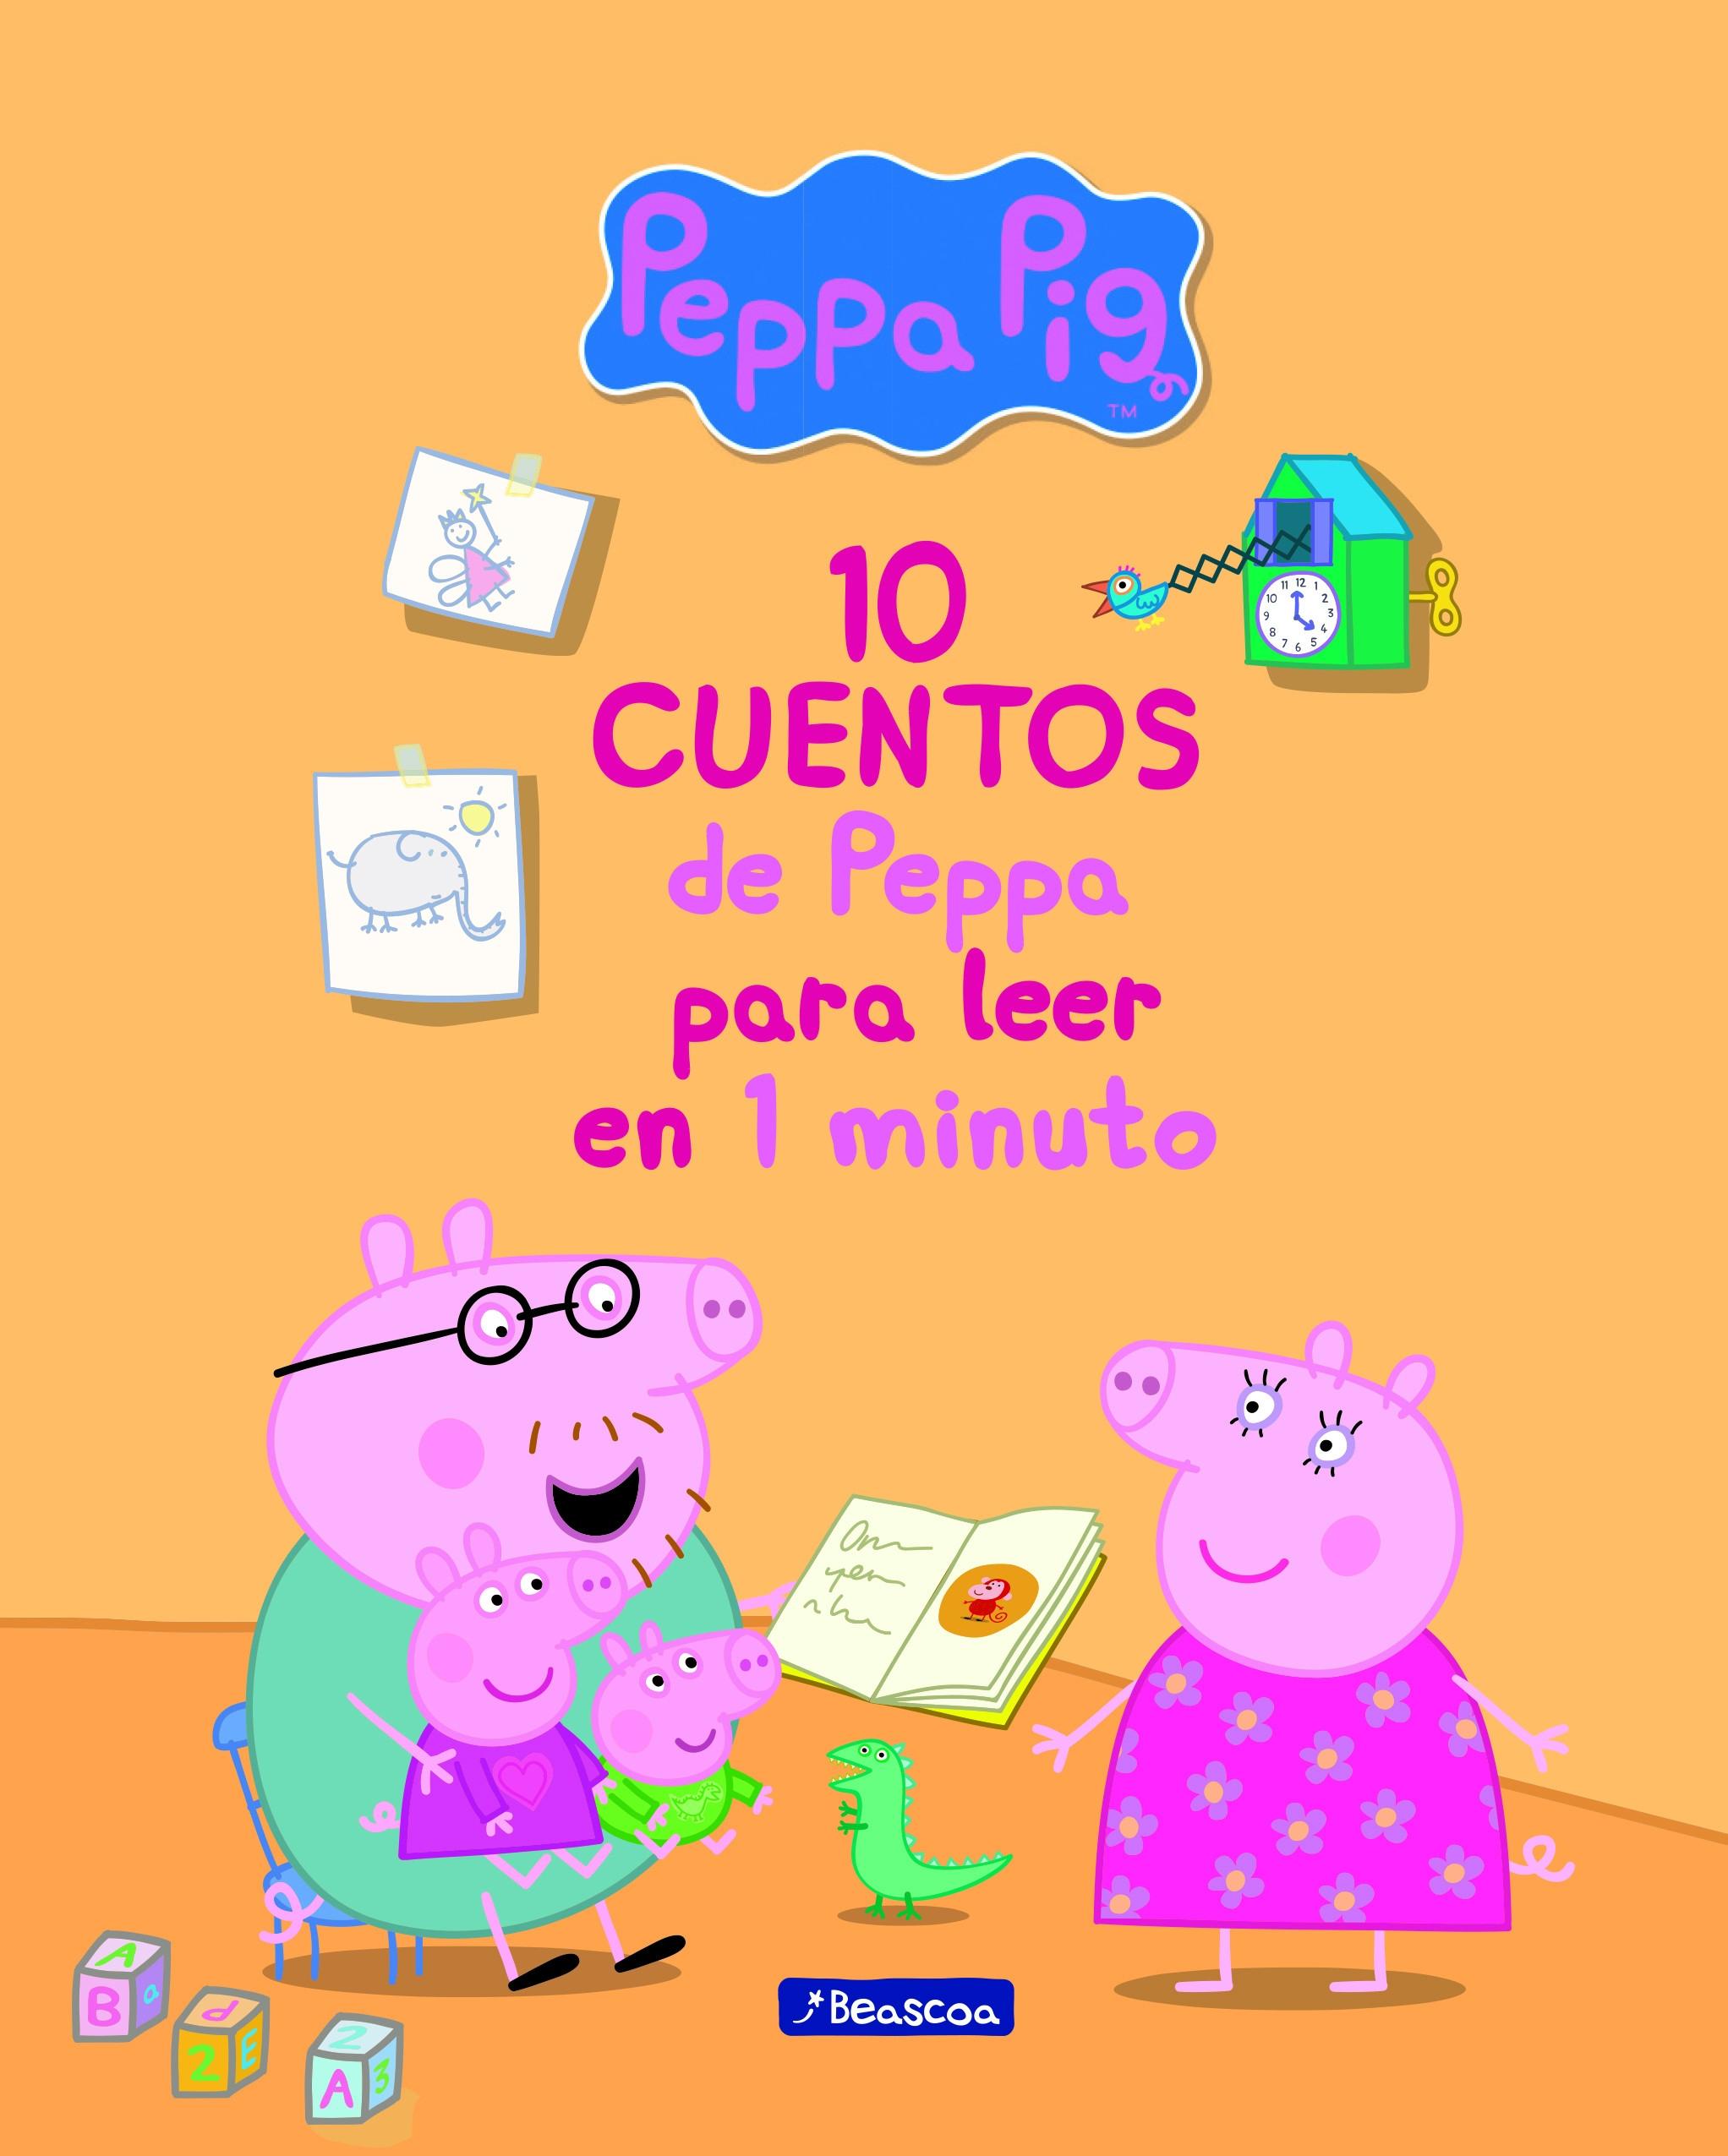 10 cuentos de Peppa para leer en 1 minuto "(Un cuento de Peppa Pig)"